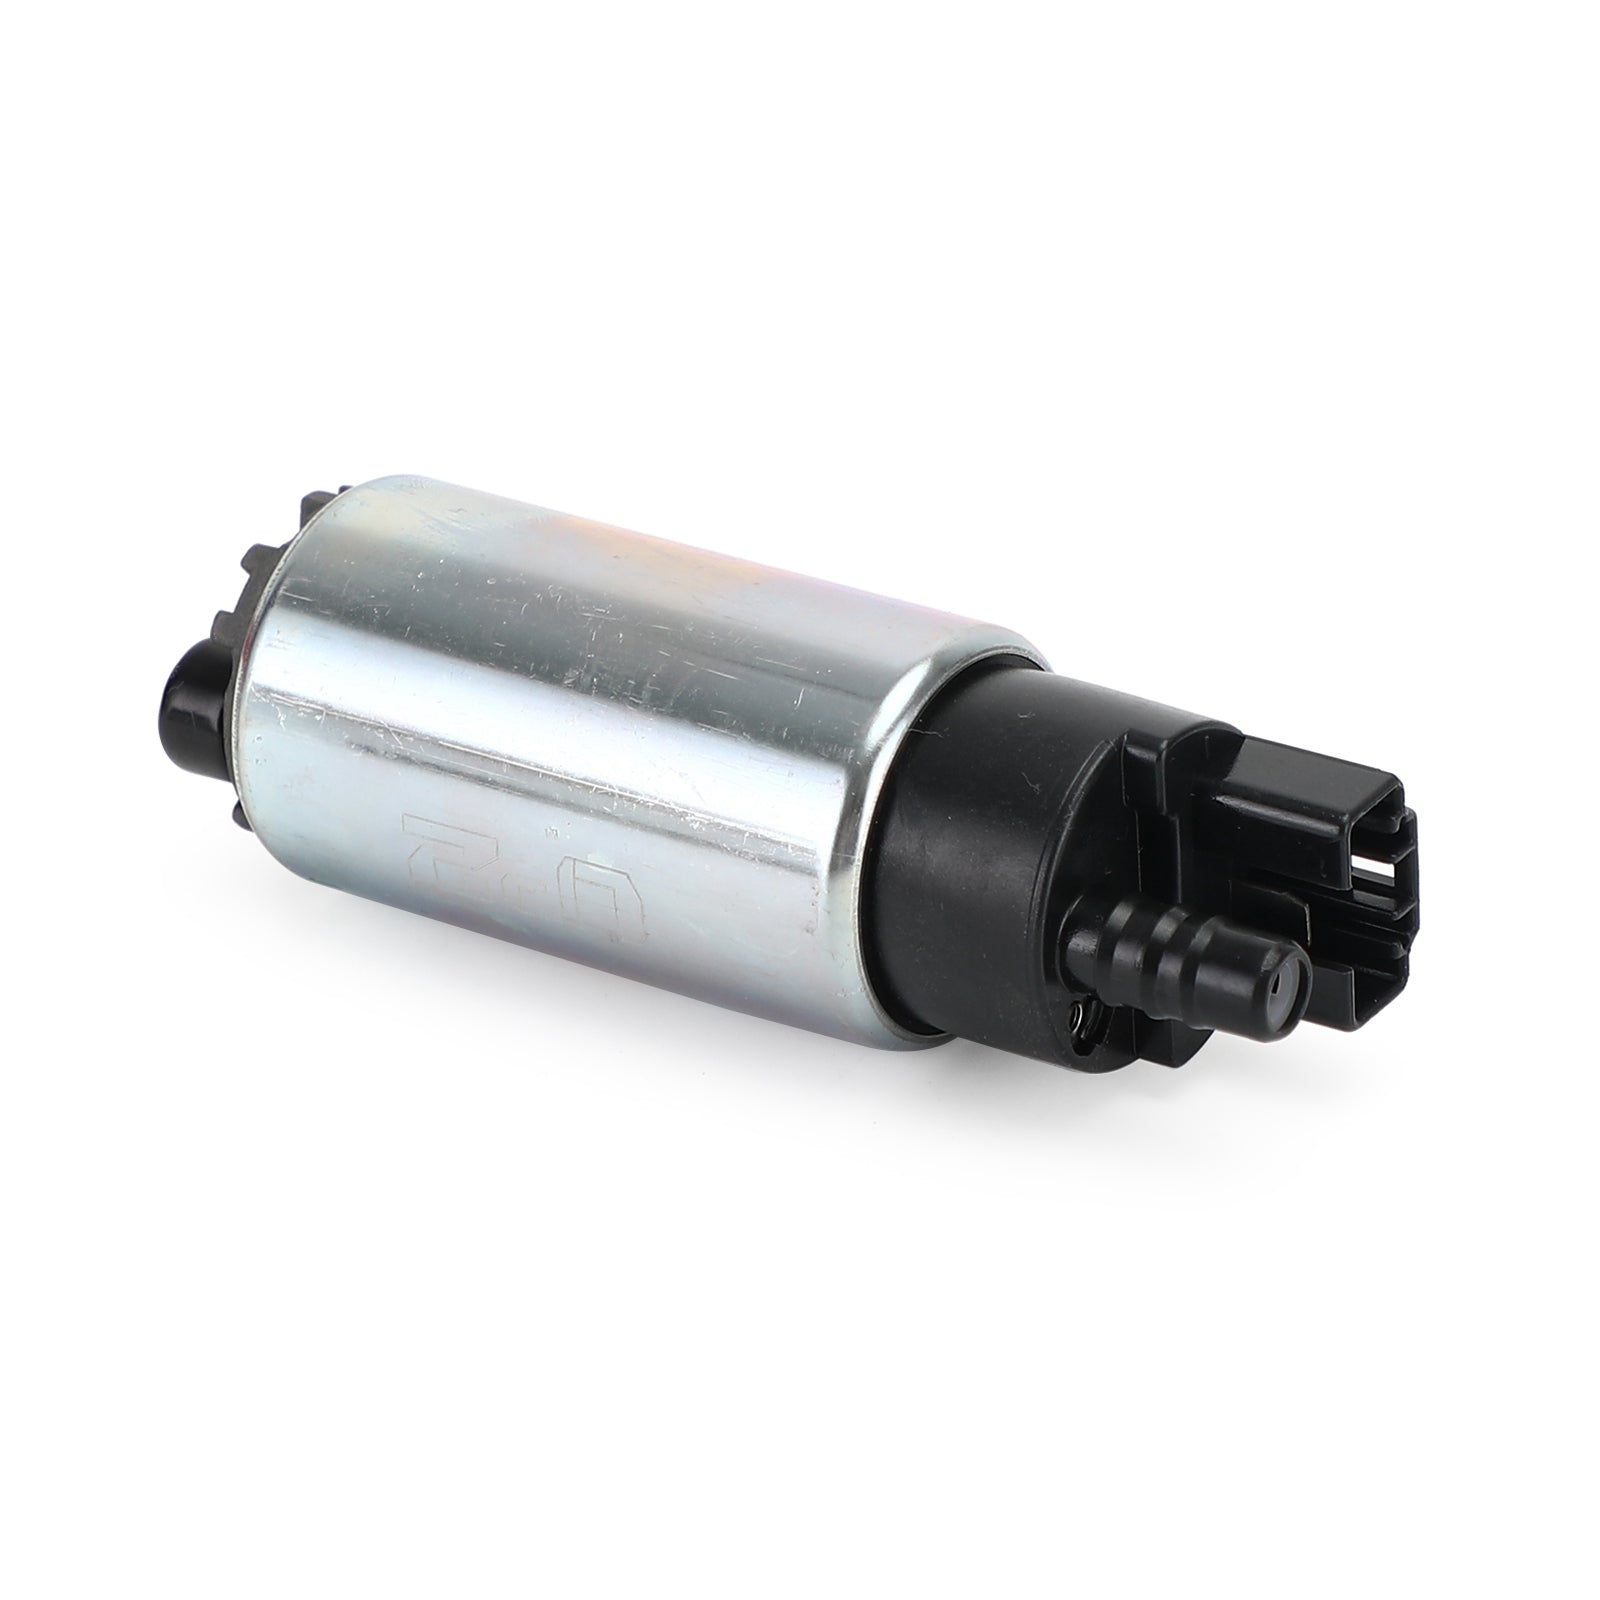 Bomba de combustible para Yamaha XT660 XT660R XT660X MT-03 XT660Z Tenere 2004-2015 genérico